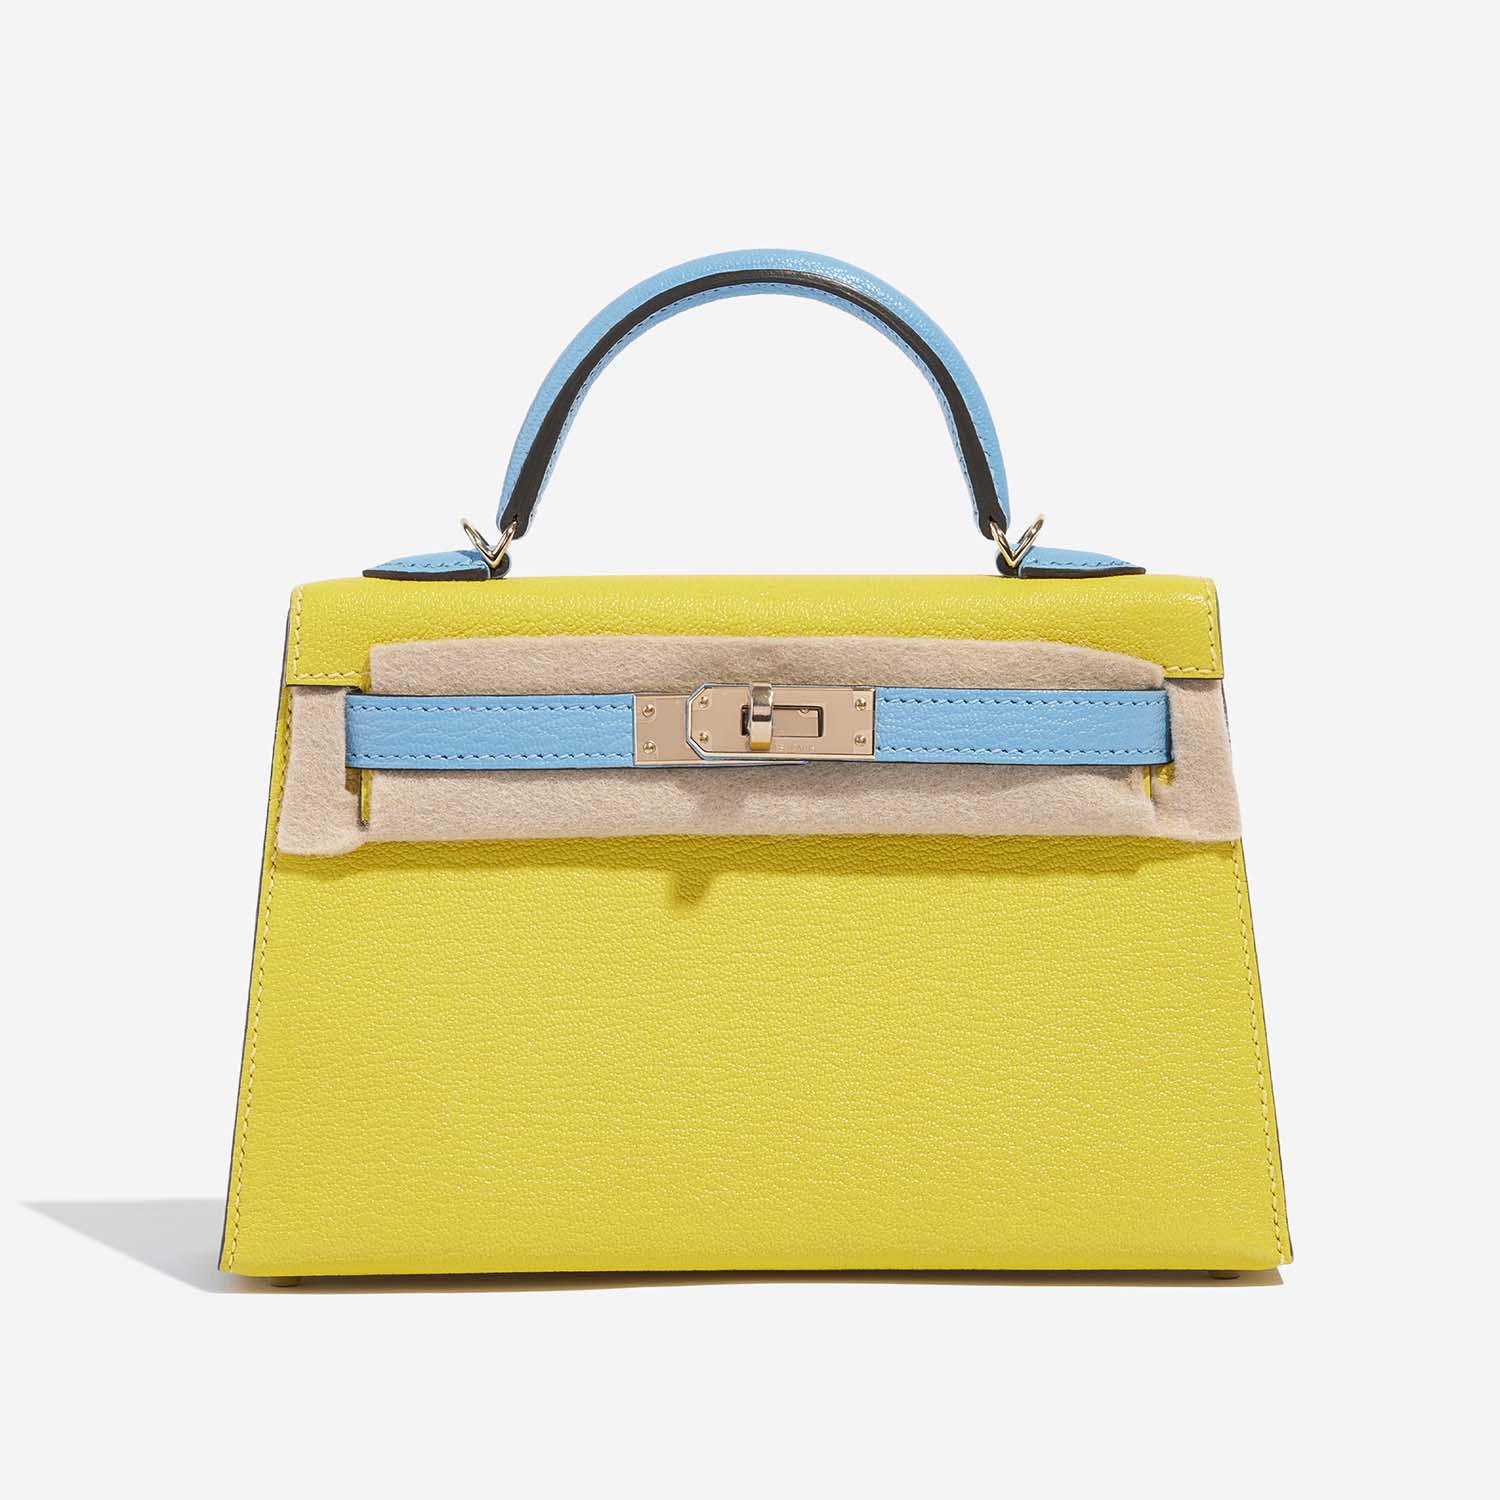 Hermès Kelly Mini Lime-BlueAztec Front Velt | Verkaufen Sie Ihre Designer-Tasche auf Saclab.com